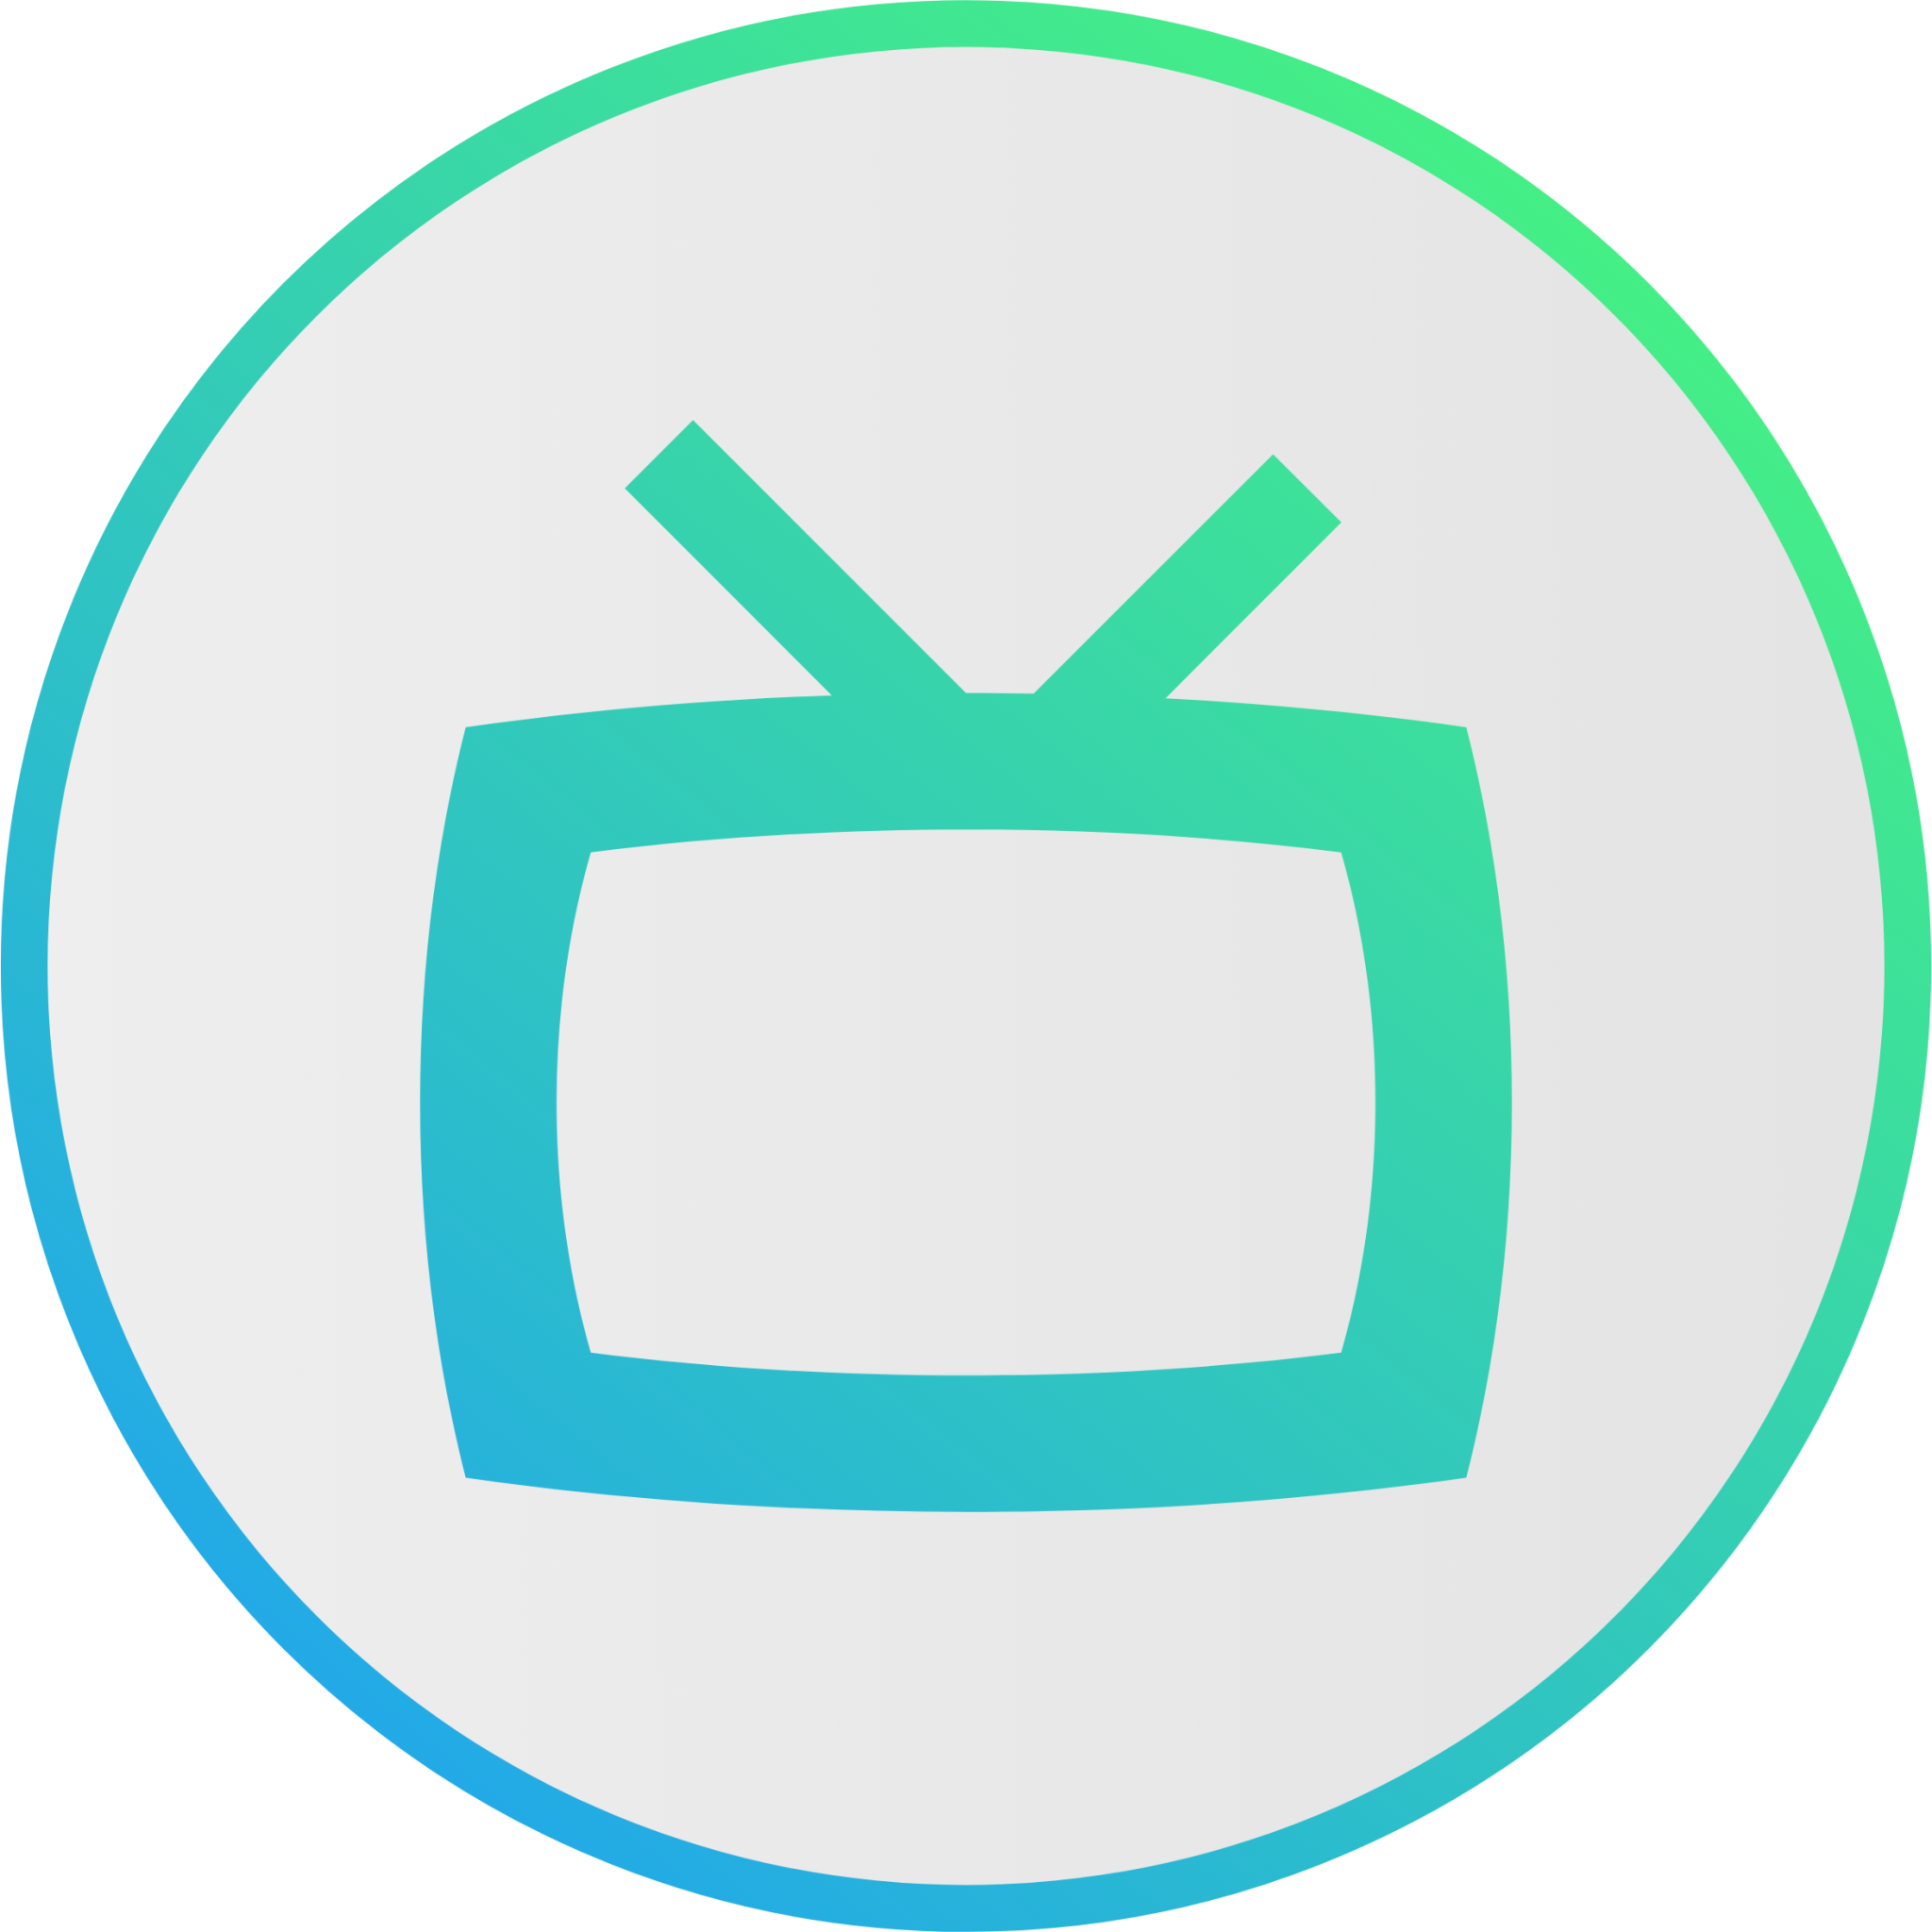 tvmaxe icon